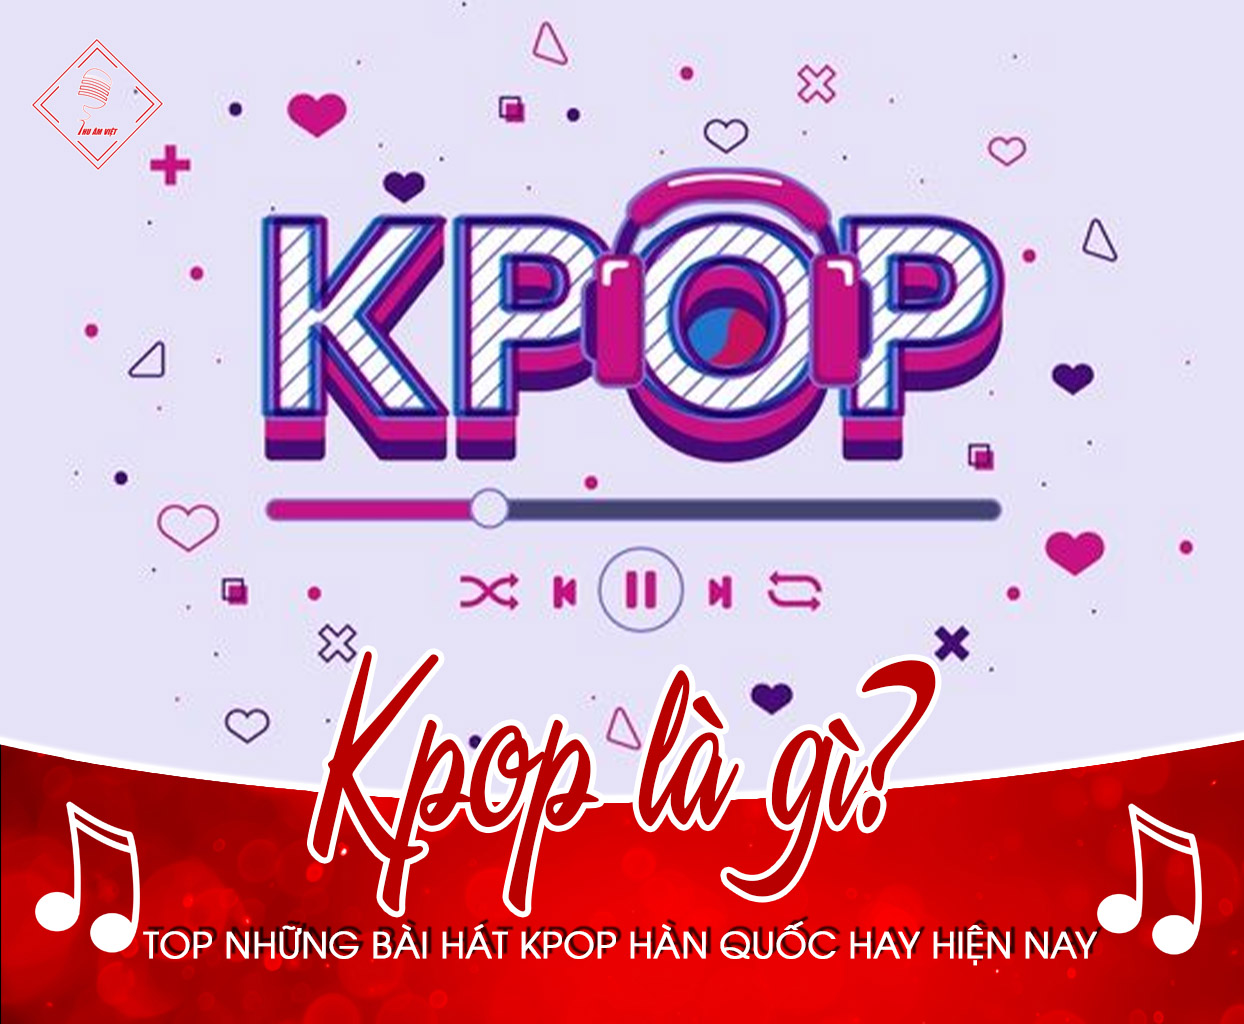 KPop là gì? Top những bài hát kpop hàn quốc hay hiện nay